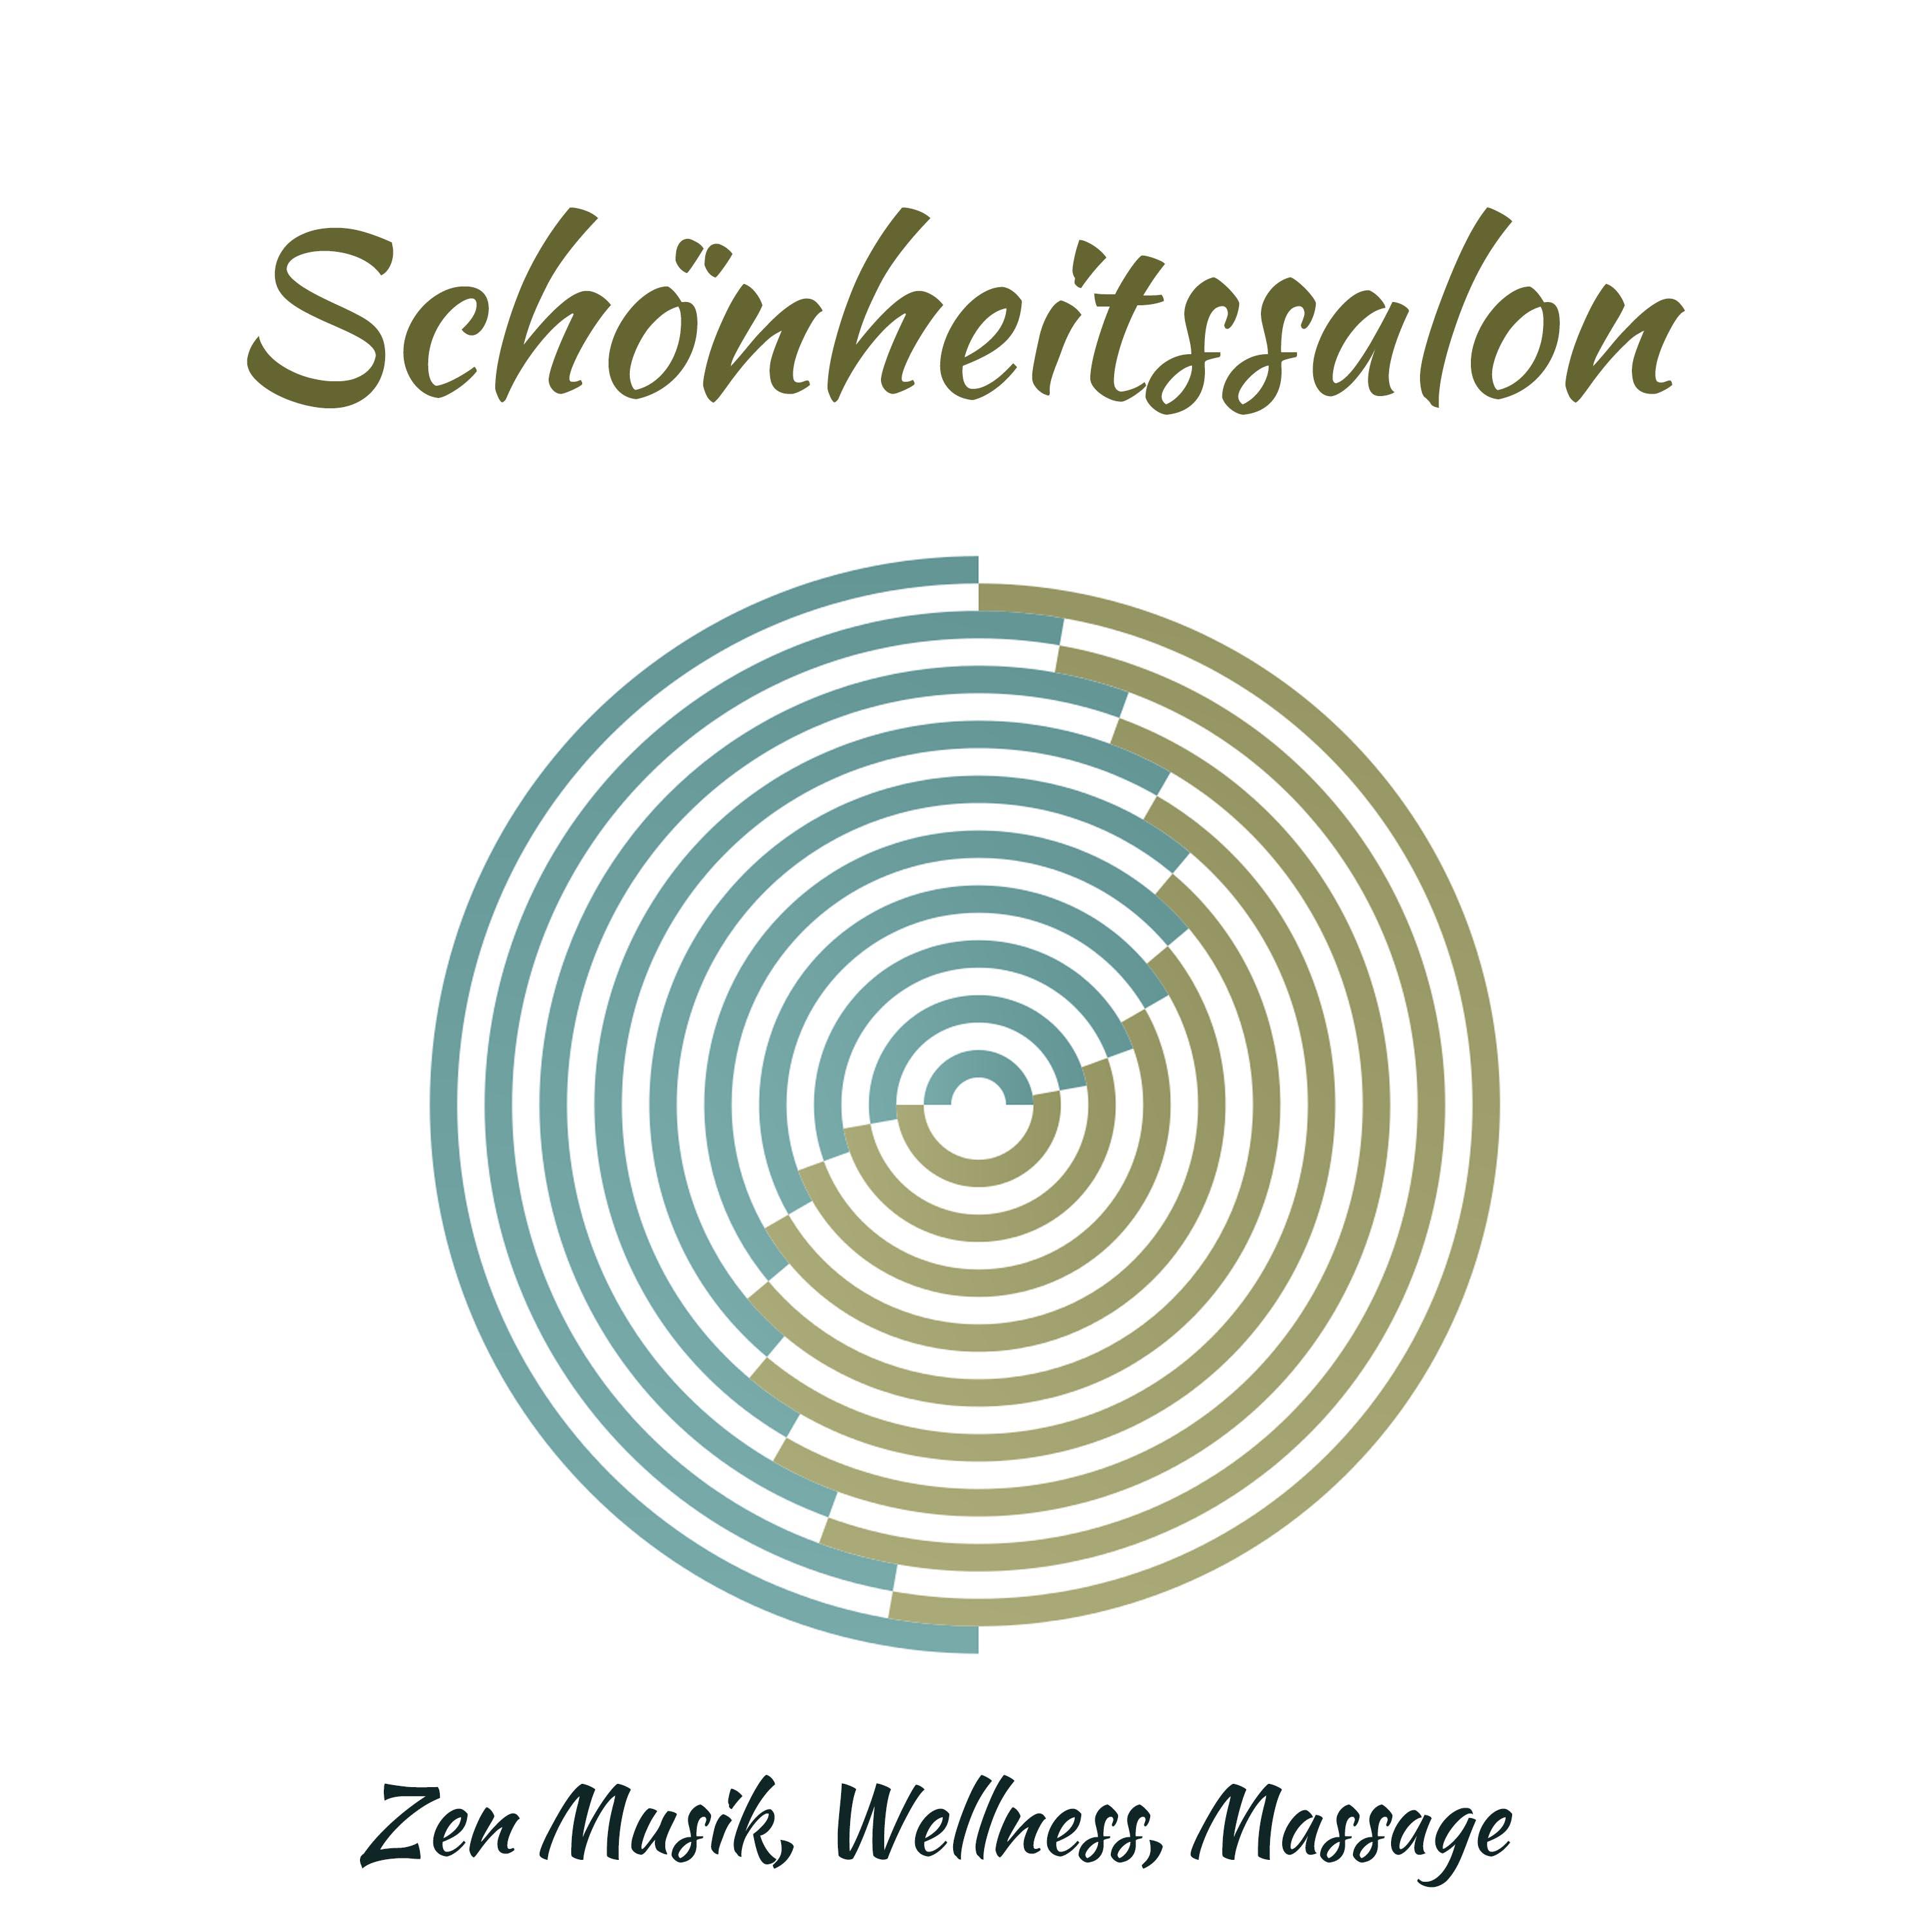 Sch nheitssalon  Zen Musik, Wellness, Massage, Gute Energie, Professionelle Musik fü r Salon